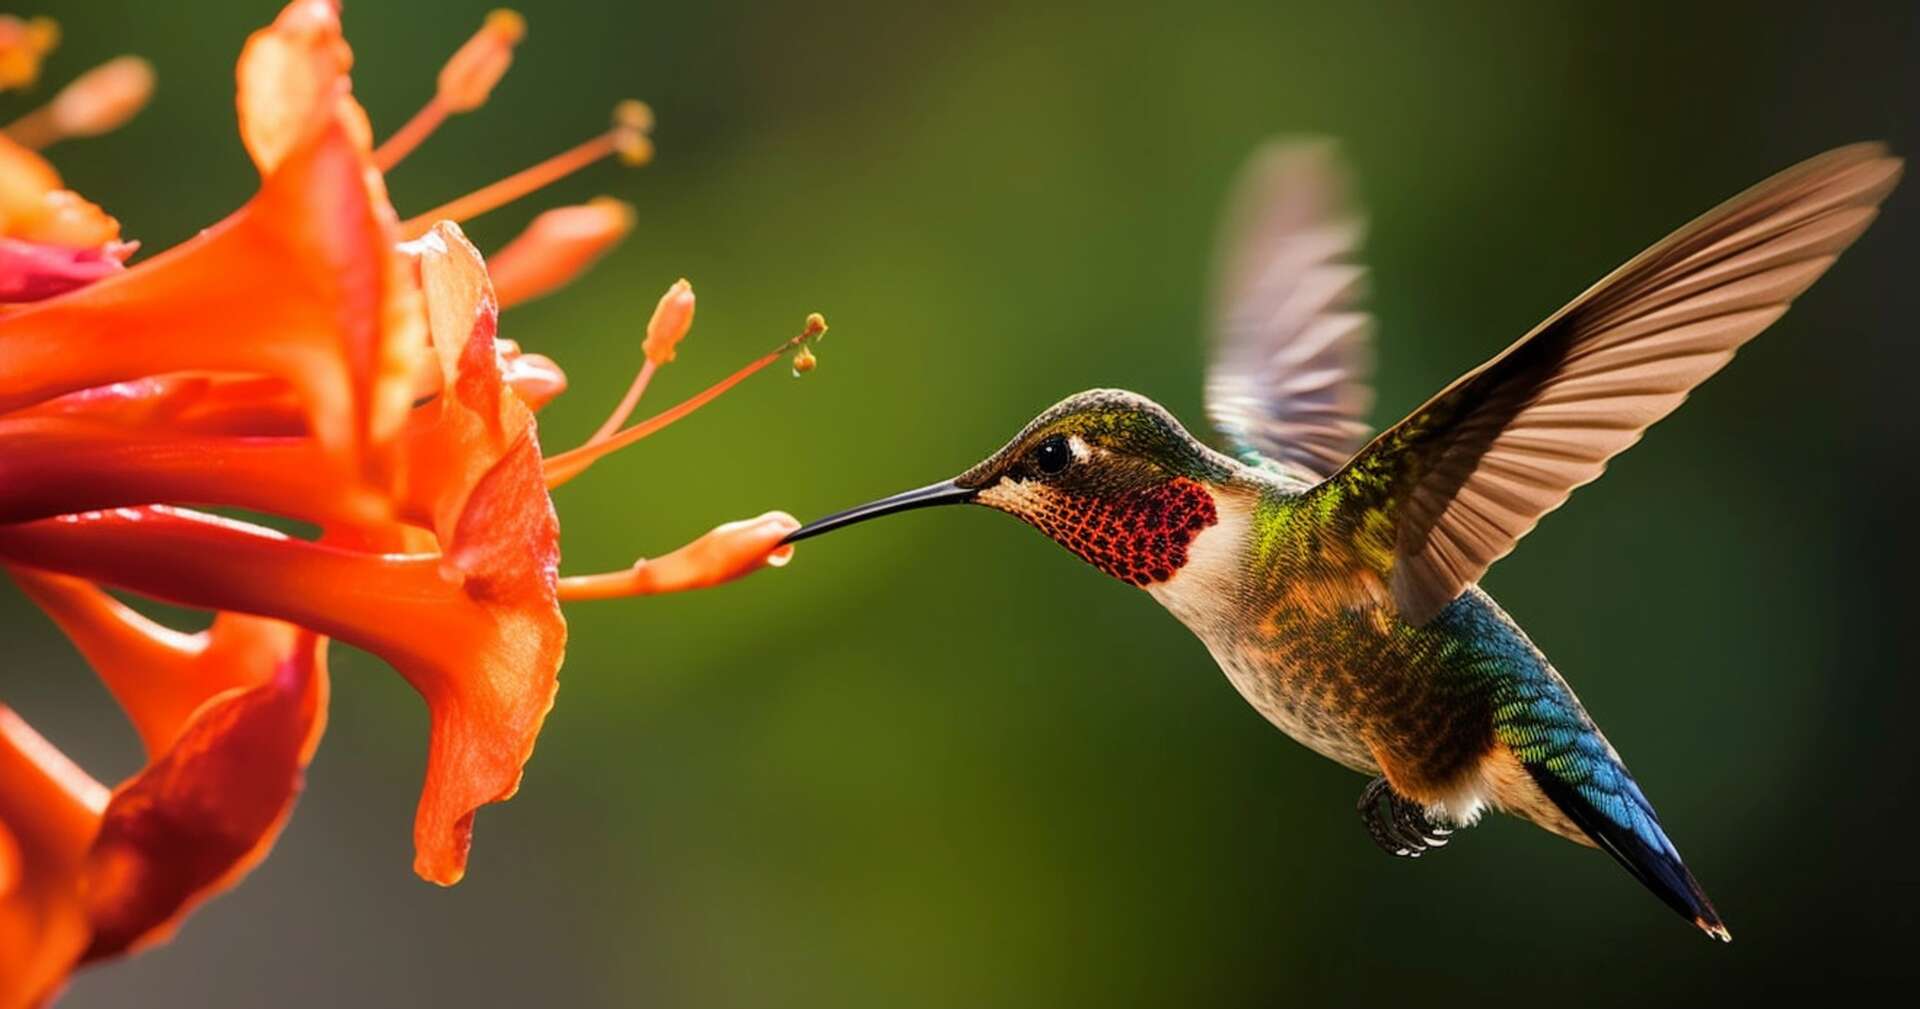 L'incroyable capacité des colibris à voler dans les espaces restreints émerveille les scientifiques